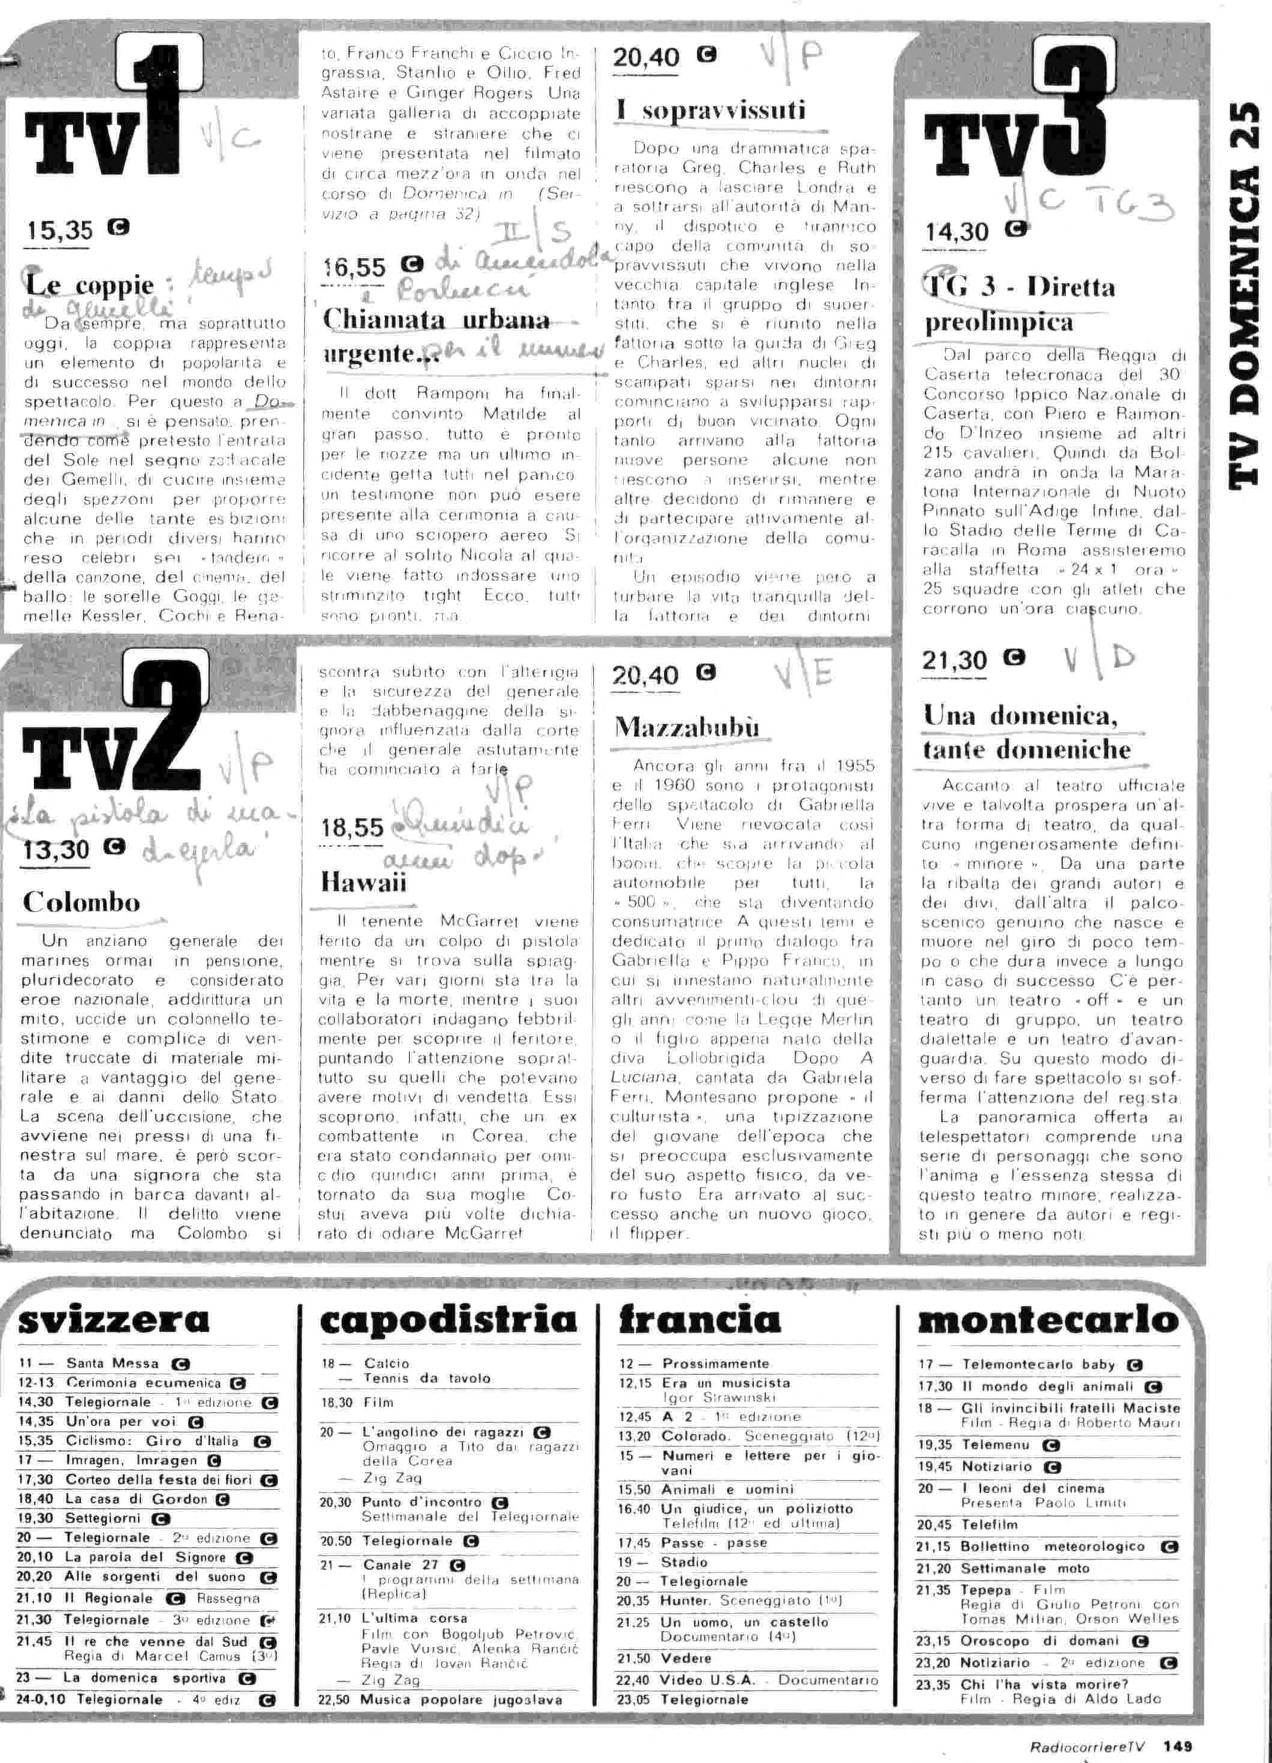 RC-1980-22_0148.jp2&id=Radiocorriere-198